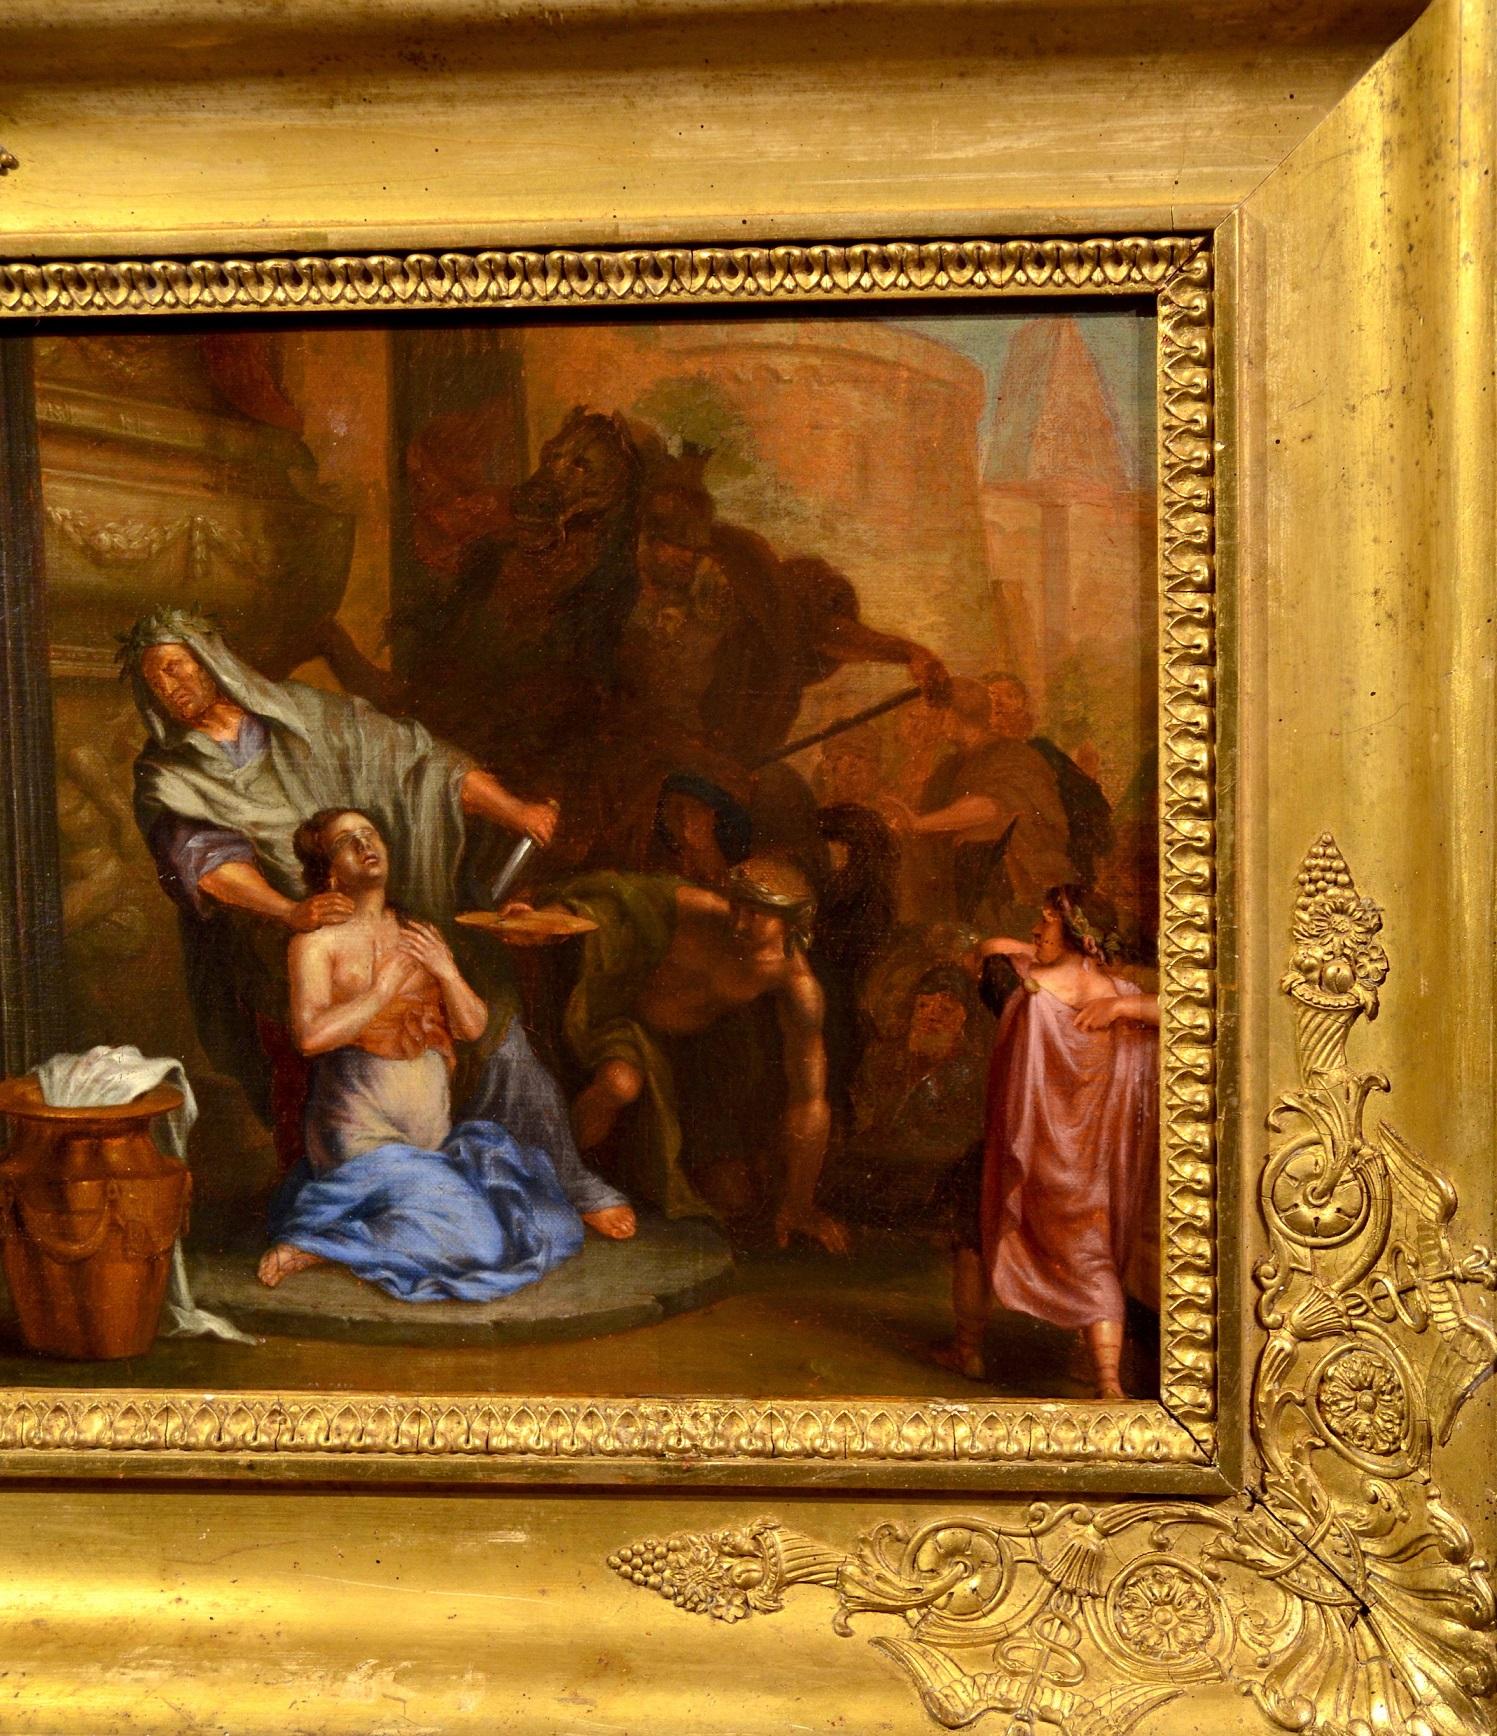 Die Opferung der Prinzessin Polyxena
Pietro Berrettini, bekannt als Pietro da Cortona (Cortona 1596 - Rom 1669), Kreis der

Öl auf Leinwand
33 x 49 cm, gerahmt 50 x 65 cm.

Das prächtige Werk inszeniert in einer szenisch wirkungsvollen Komposition